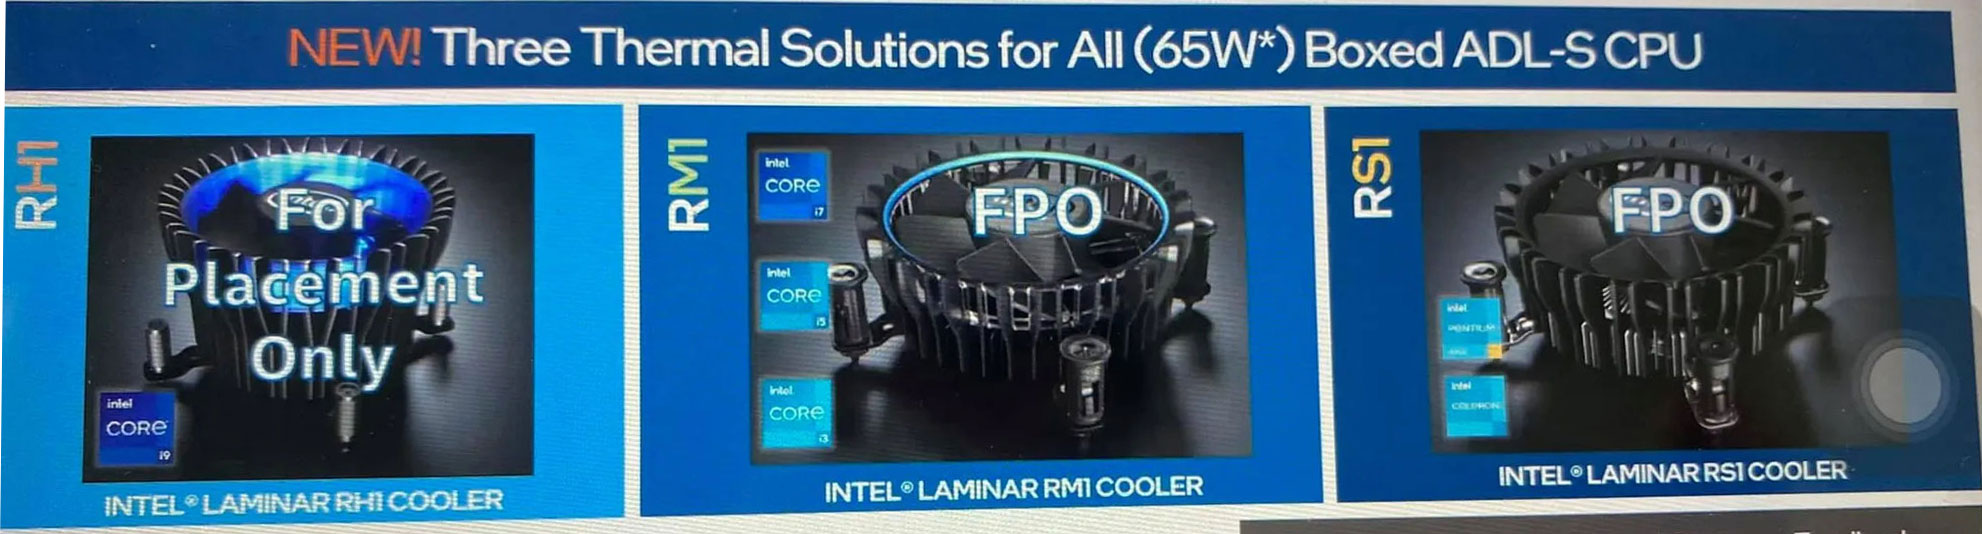 Alder Lake-S, les ventirads Intel Laminar RS1, RM1 et RH1 se dévoilent -  GinjFo